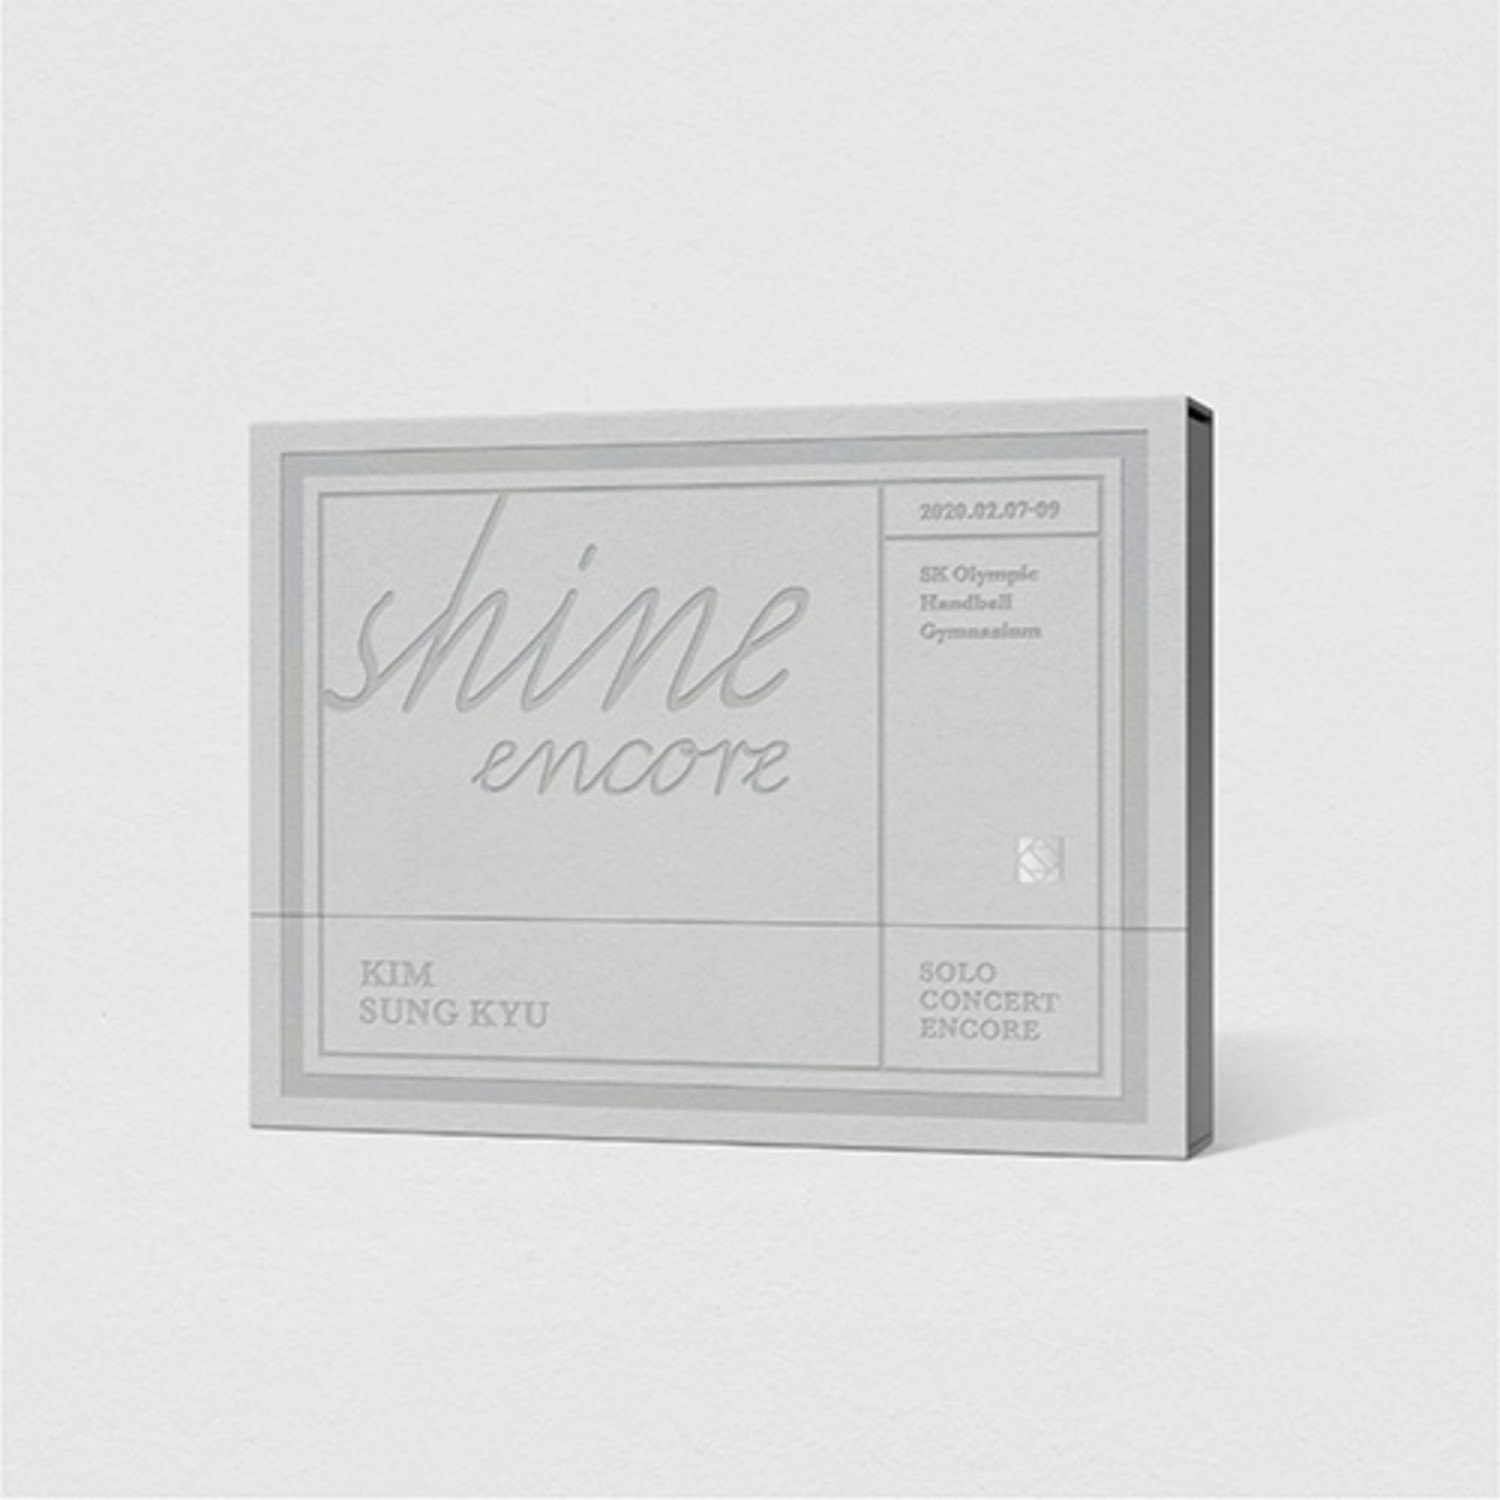 김성규 (KIM SUNG KYU) - SOLO CONCERT [SHINE ENCORE] DVD